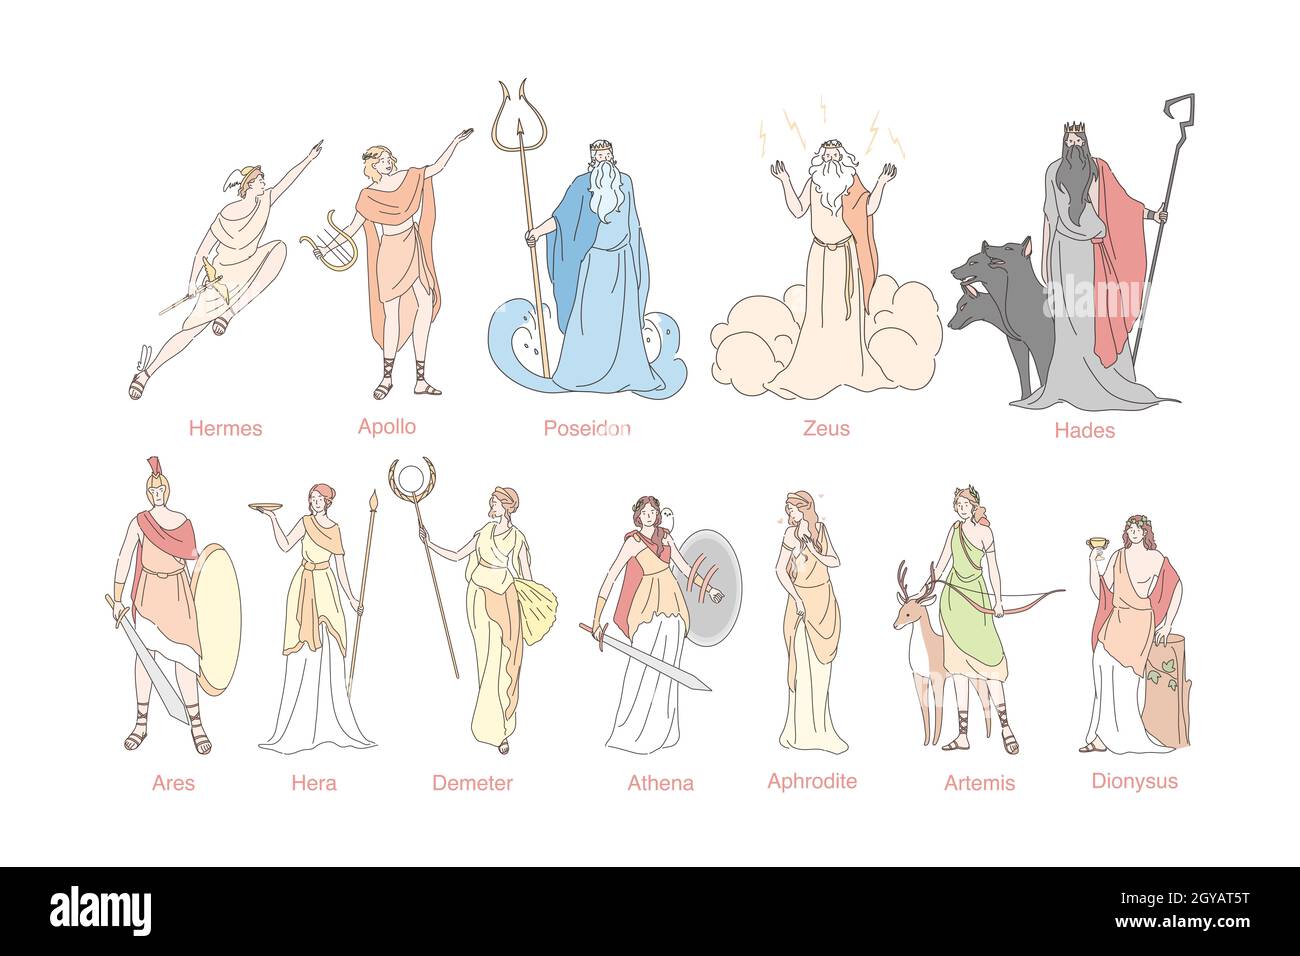 Los dioses griegos antiguos establecen el concepto. Dios panteón en Grecia Hermes, Apolo, Poseidón, Zeus, Hades, Ares, Hera, Demeter, Atenea, Afrodita, Artemisa y Dion Foto de stock